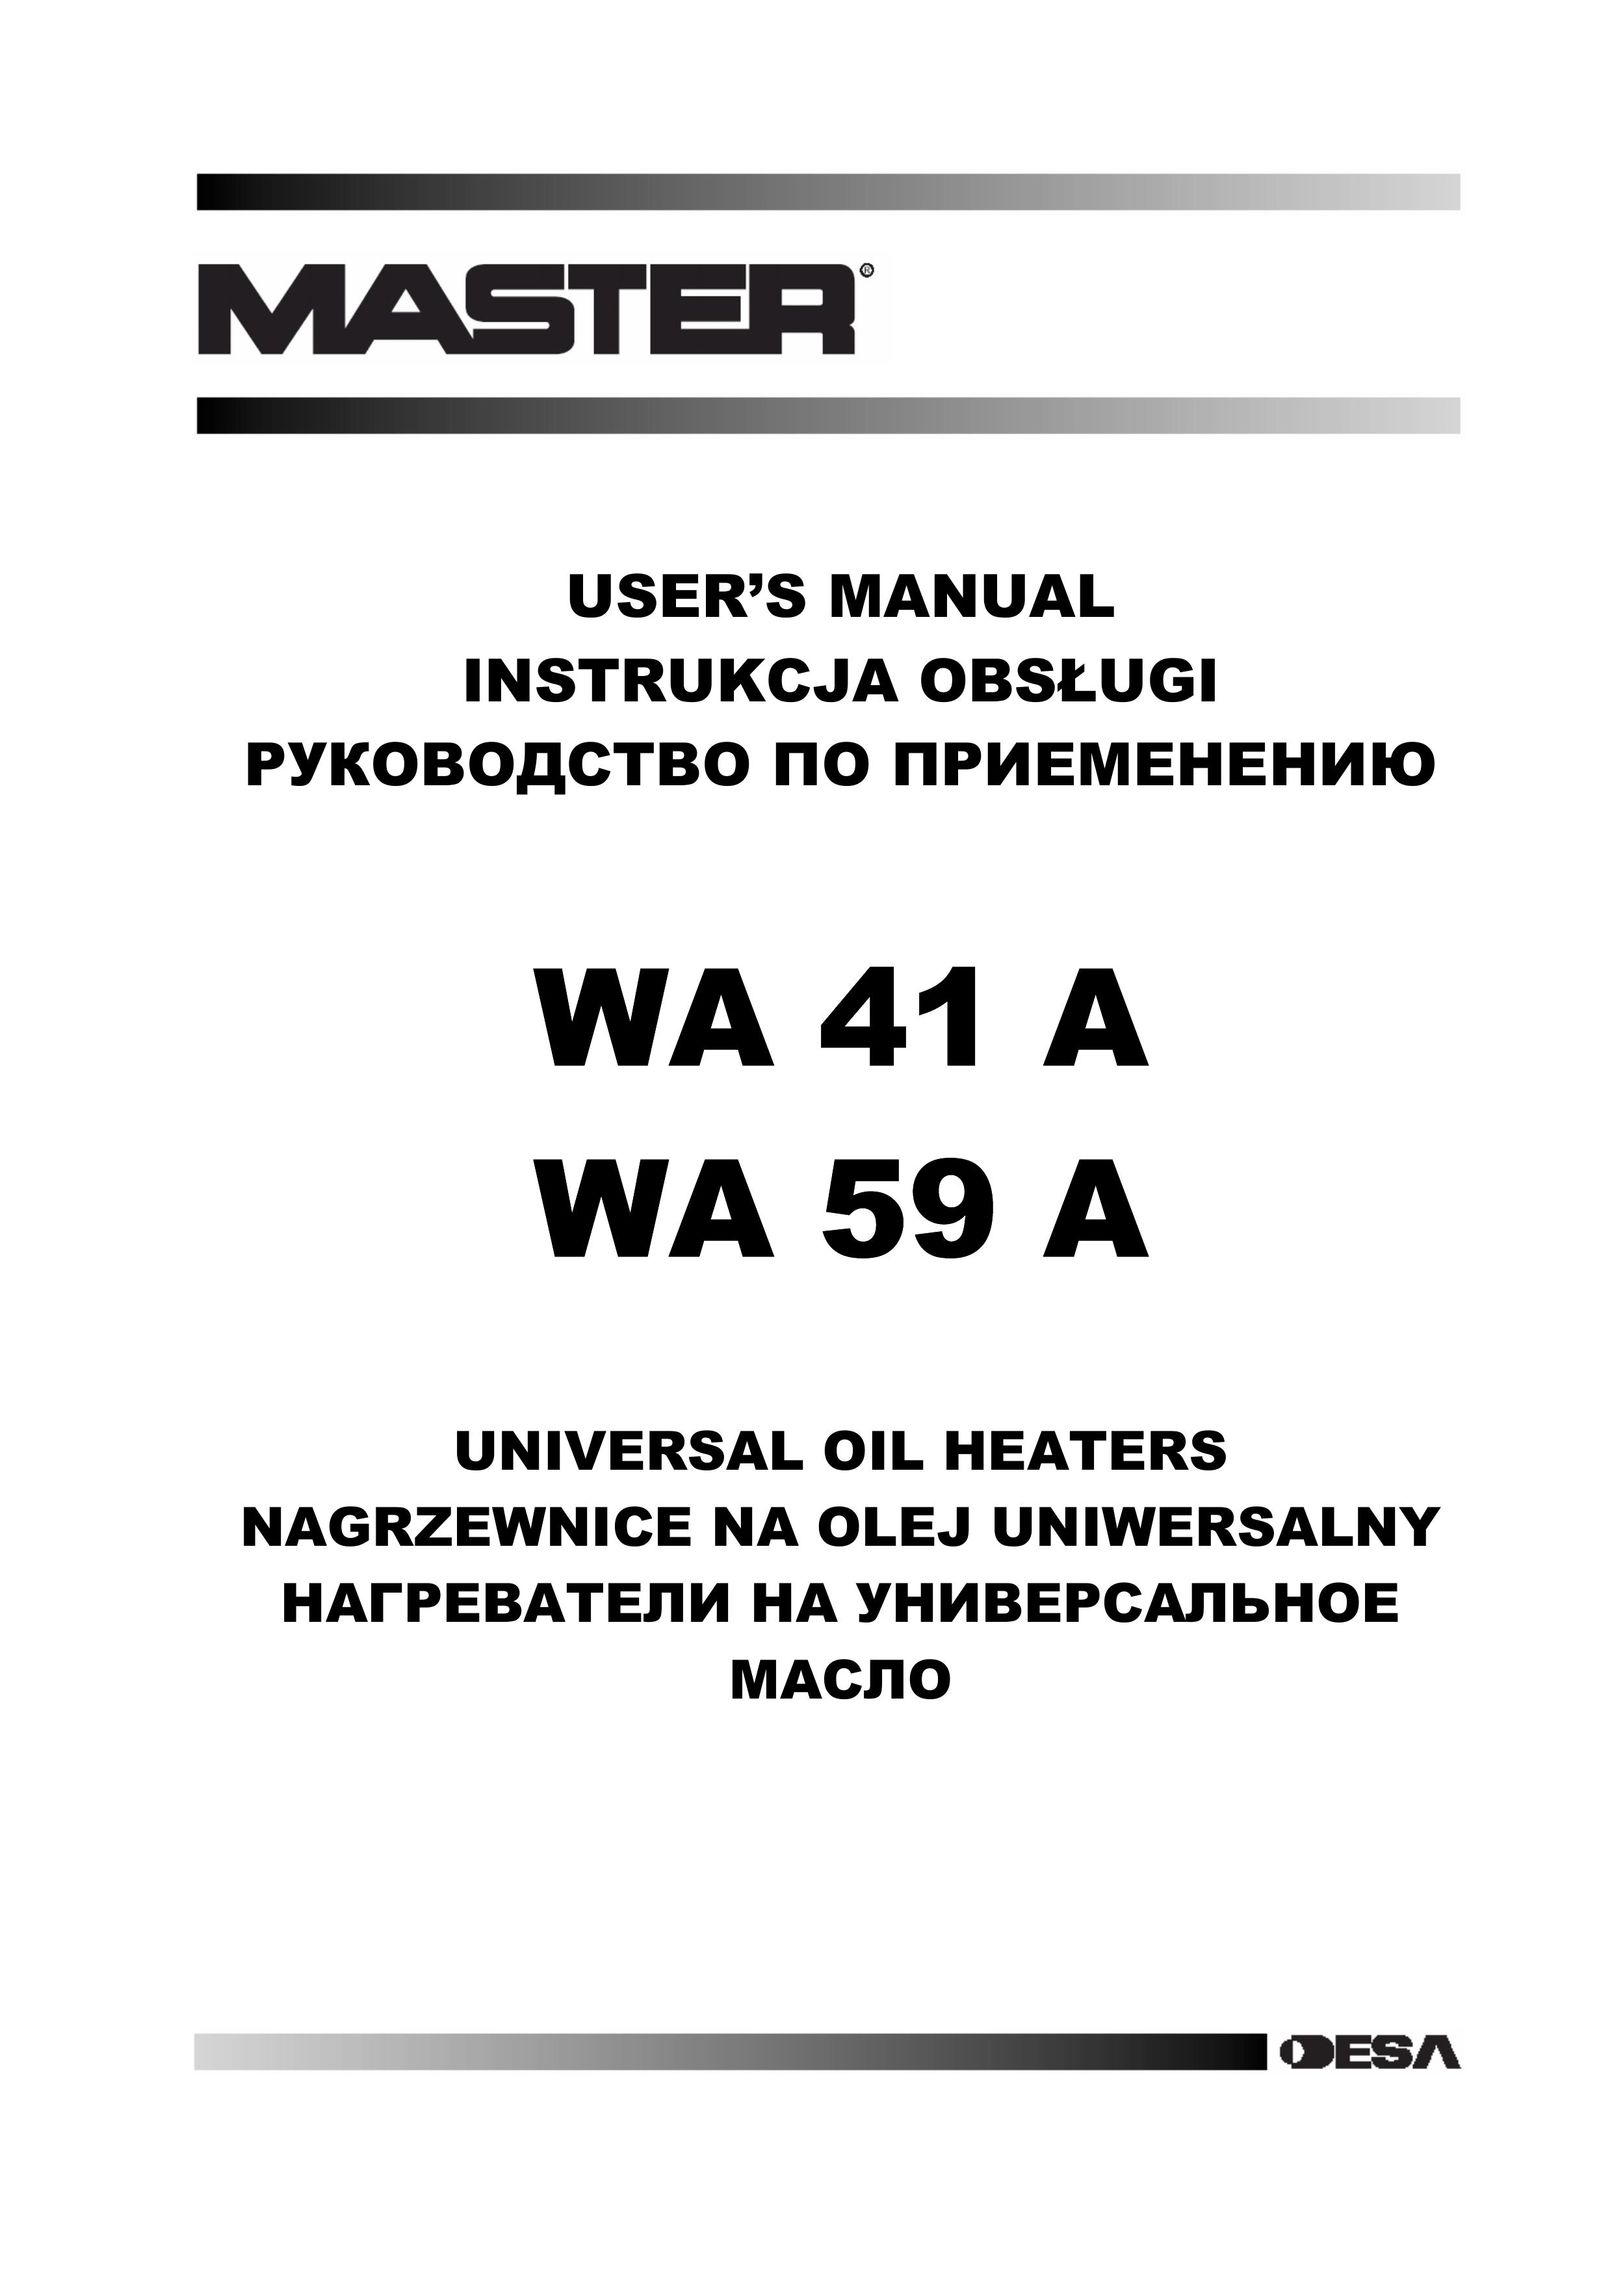 Master Lock WA 41 A Electric Heater User Manual